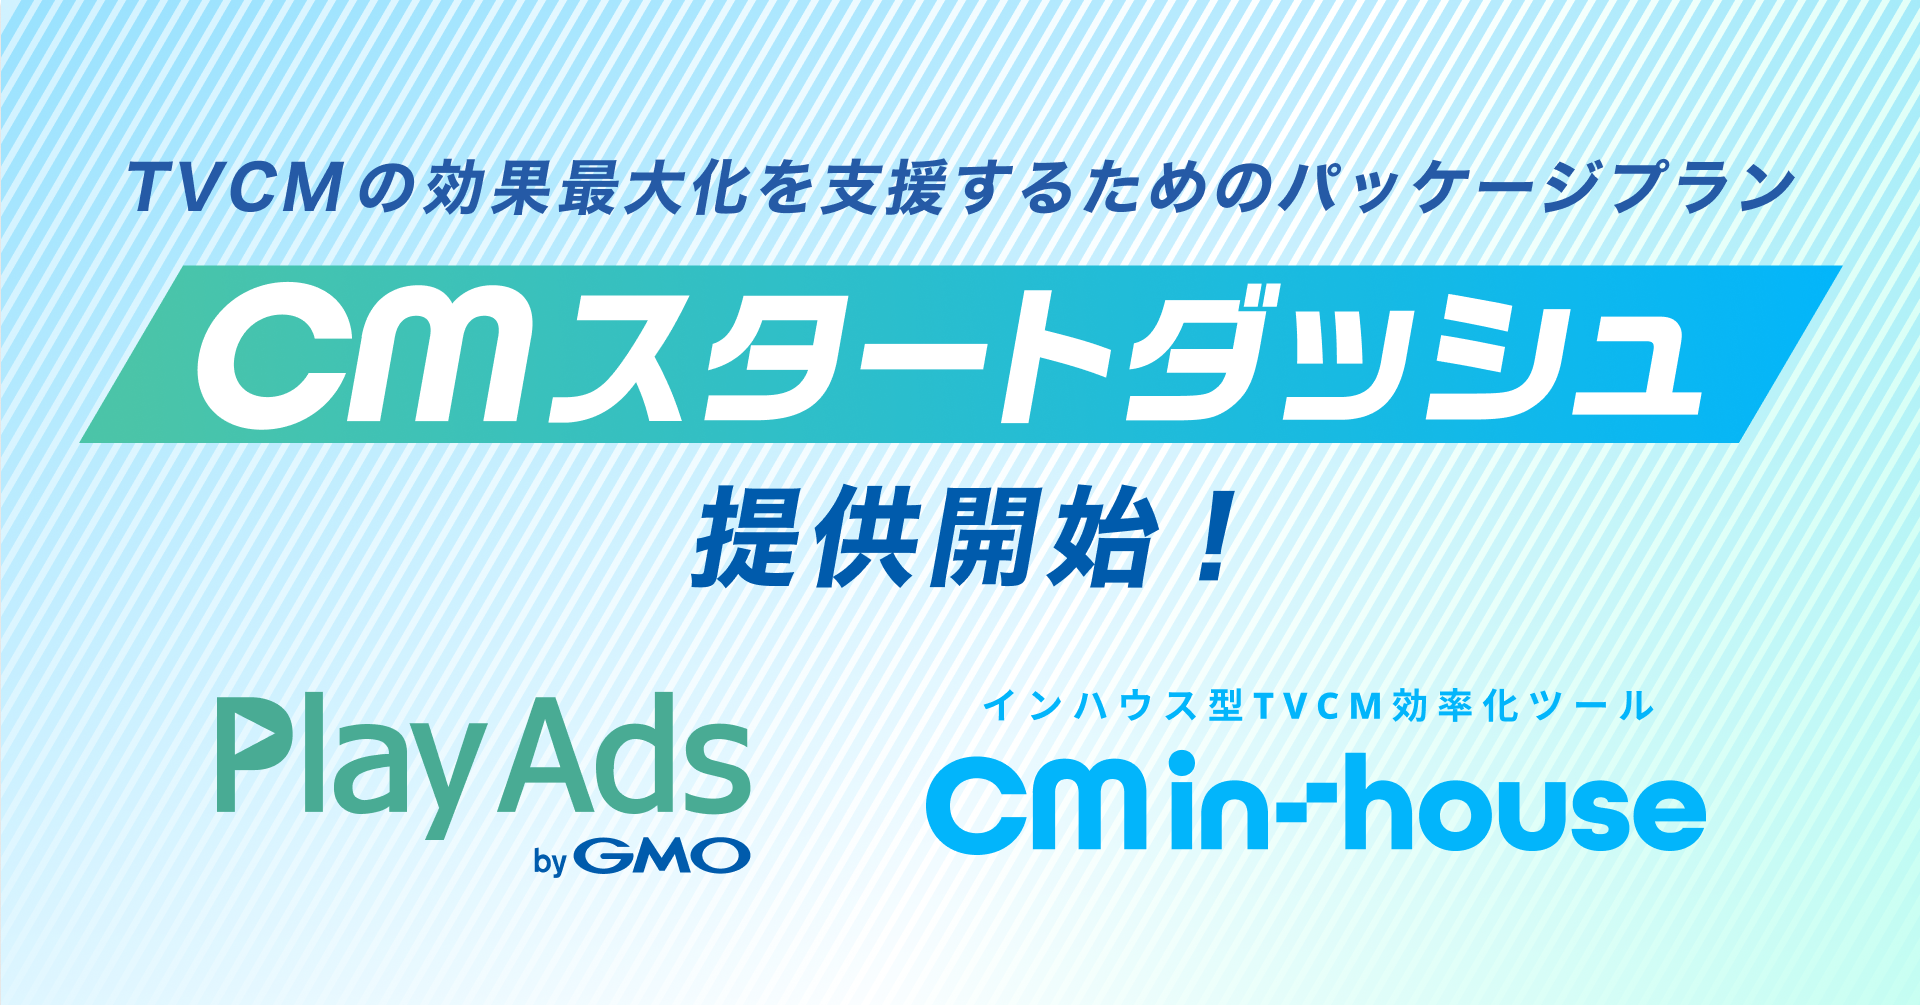 特許取得済みCM動画検証ツール「PlayAds(プレイアズ) byGMO」と日本初インハウス型TVCMツール「CM in(イン)-(－)house(ハウス)」がTVCMの効果を最大化するためのパッケージプラン『CMスタートダッシュ』提供開始！